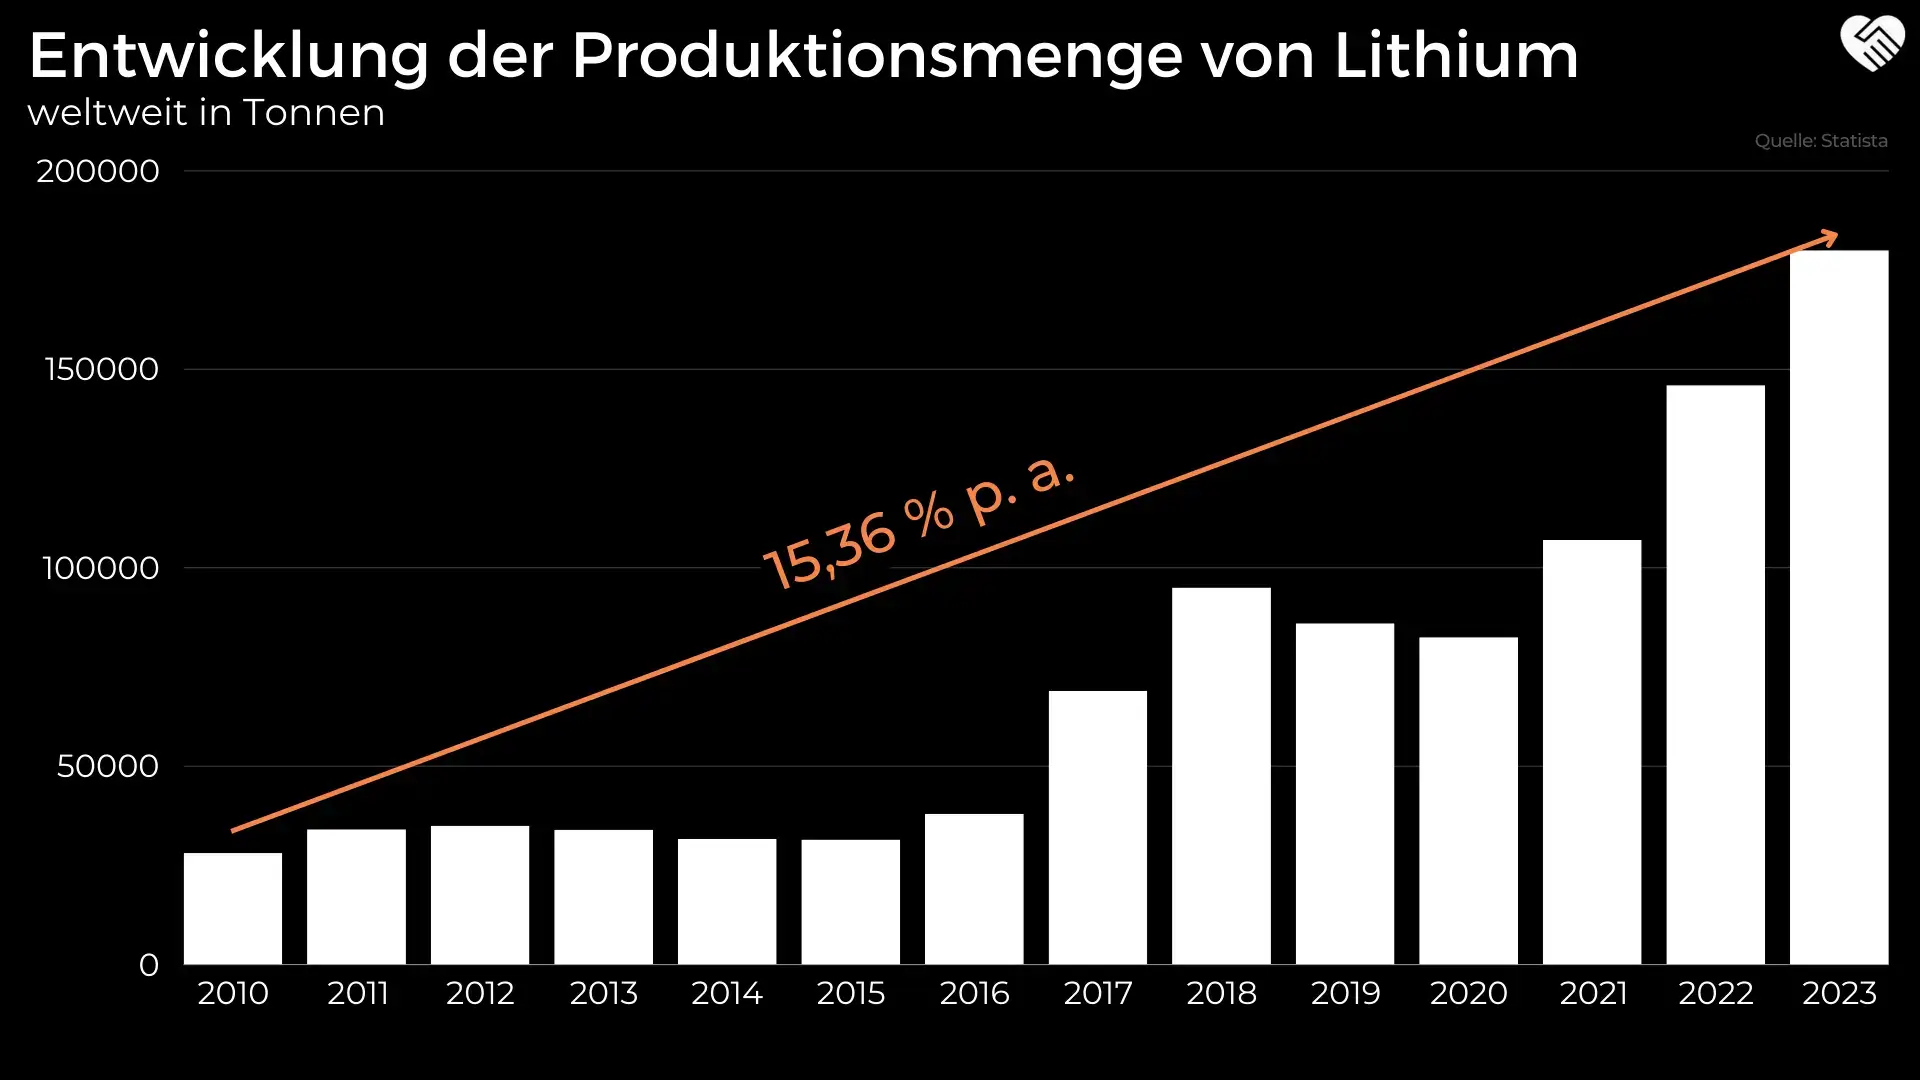 Entwicklung der Produktionsmenge von Lithium weltweit